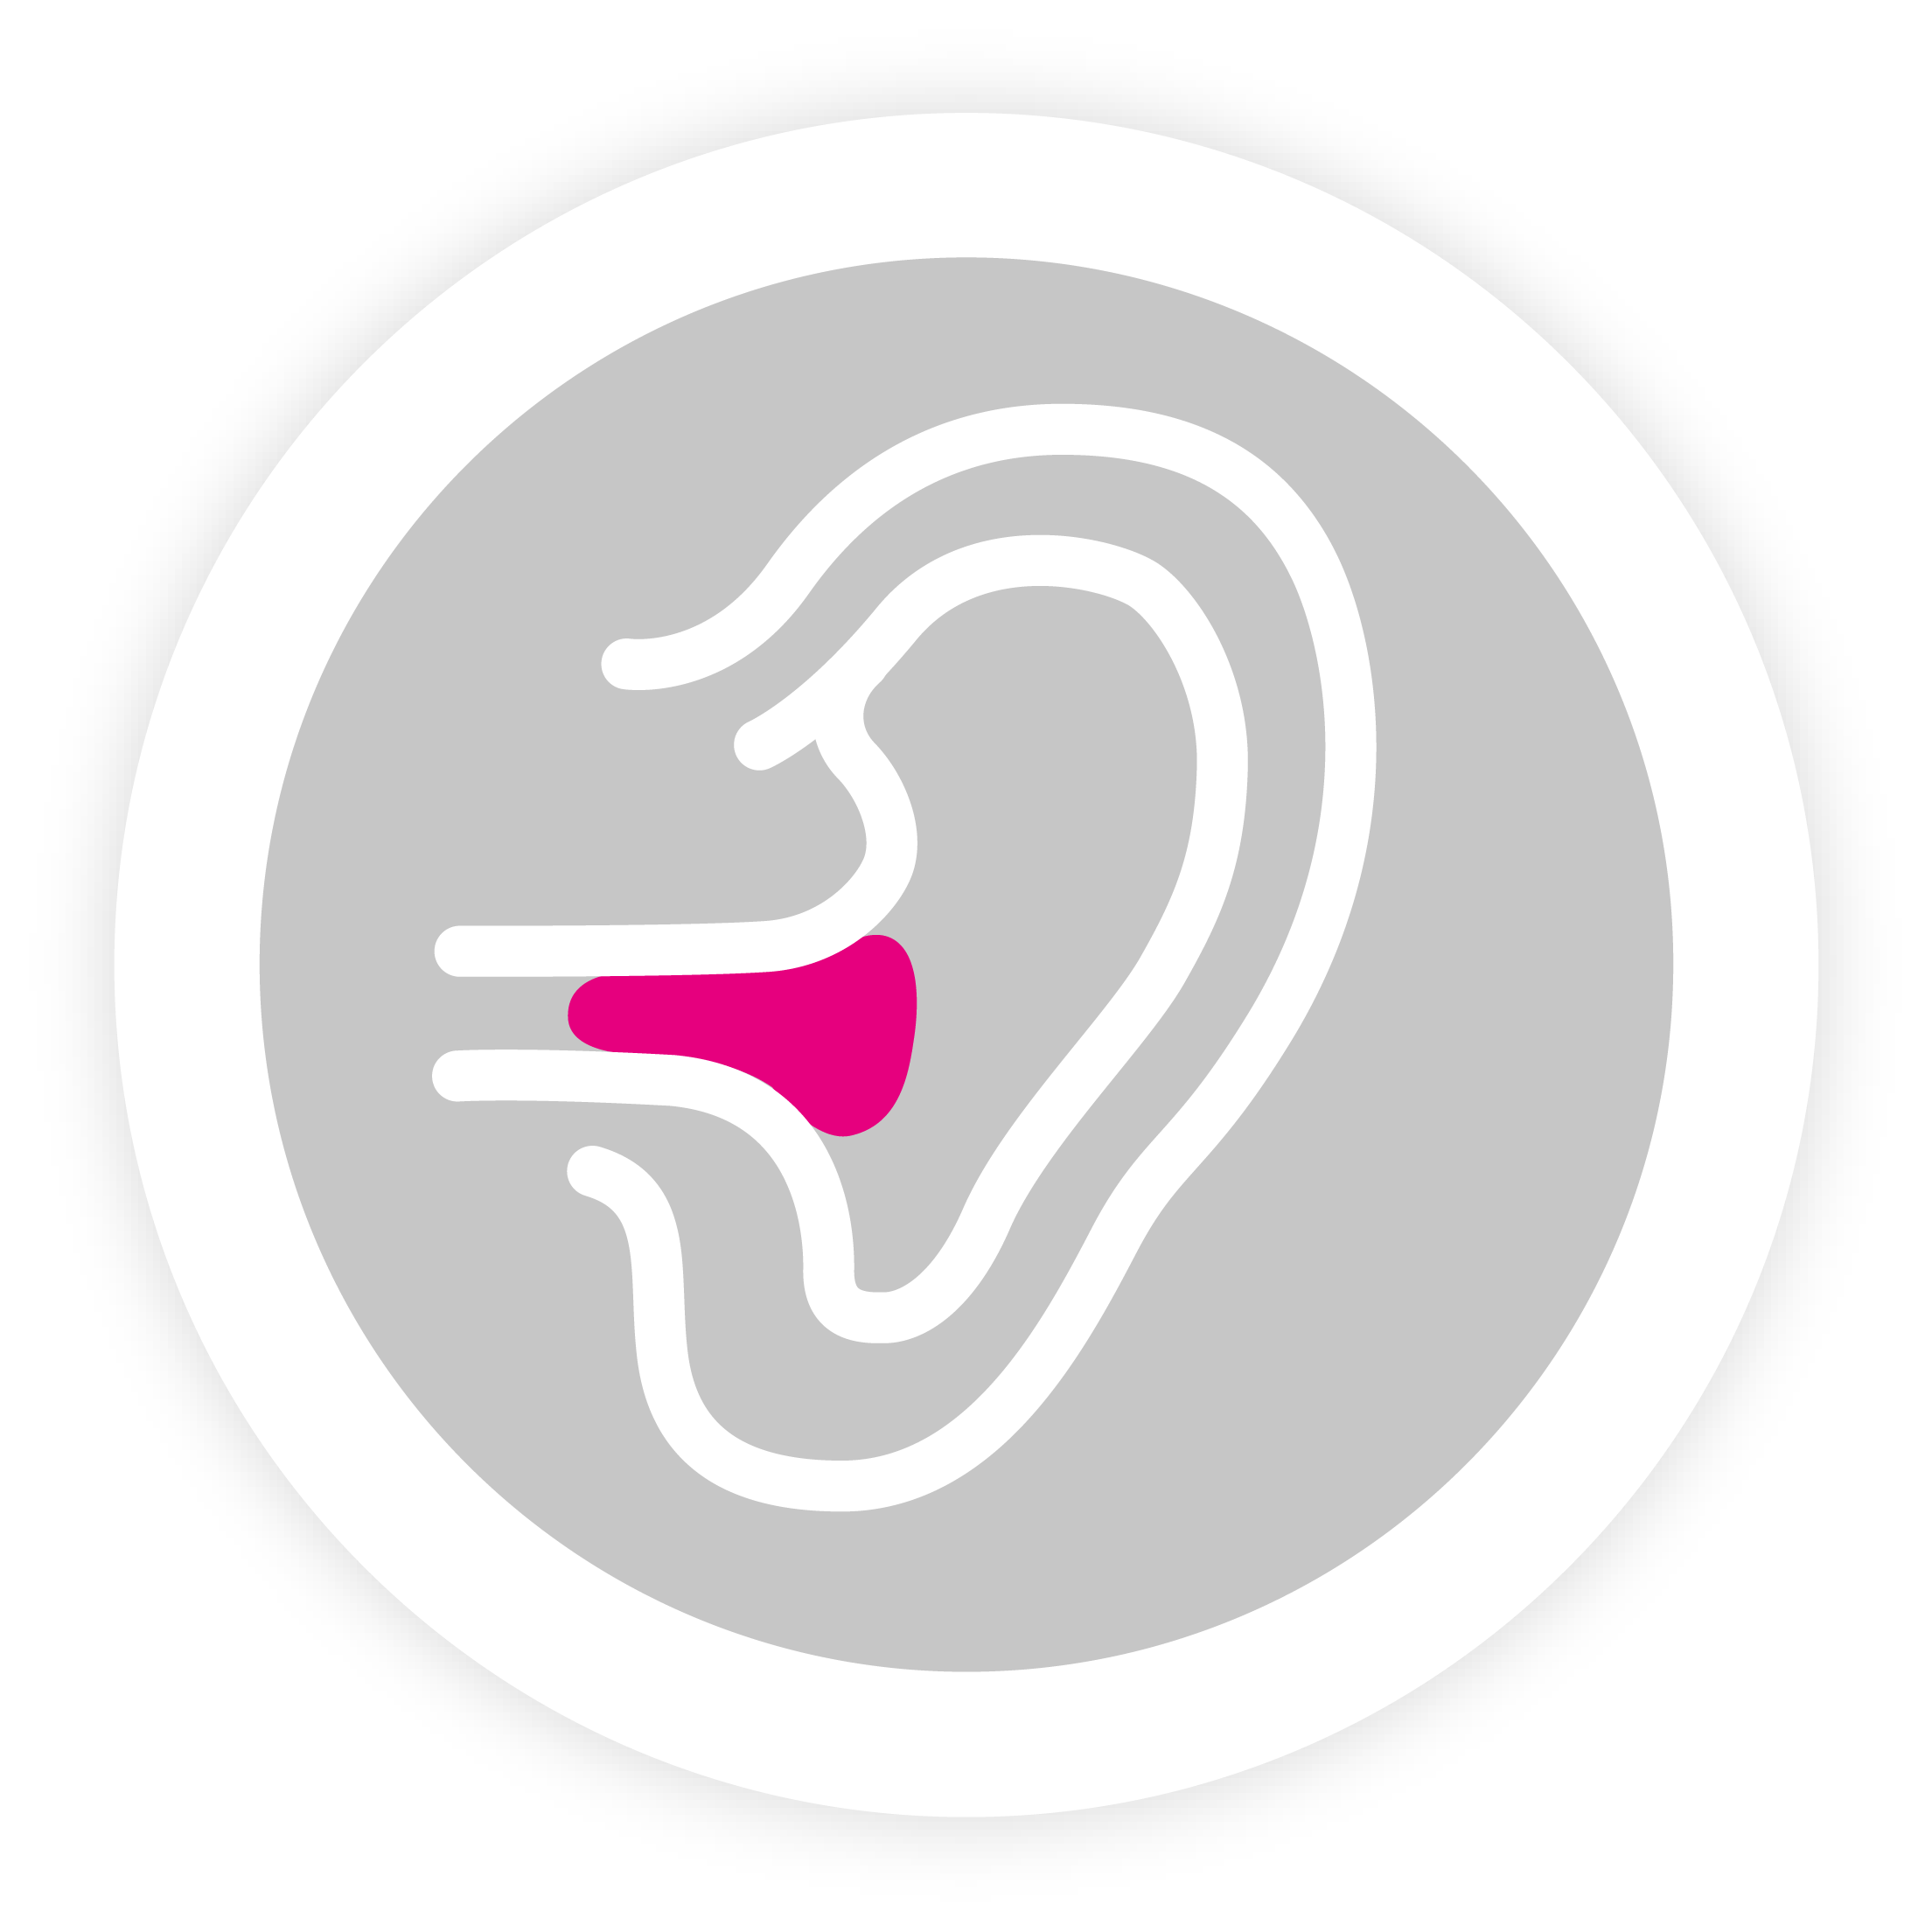 <p>Os tampões de espuma elástica são enrolados firmemente, inseridos profundamente no canal auditivo e mantidos com a ponta do dedo durante 30 a 60 segundos, até terem expandido completamente. Os tampões lamelares são inseridos no canal auditivo sem enrolar.</p>
